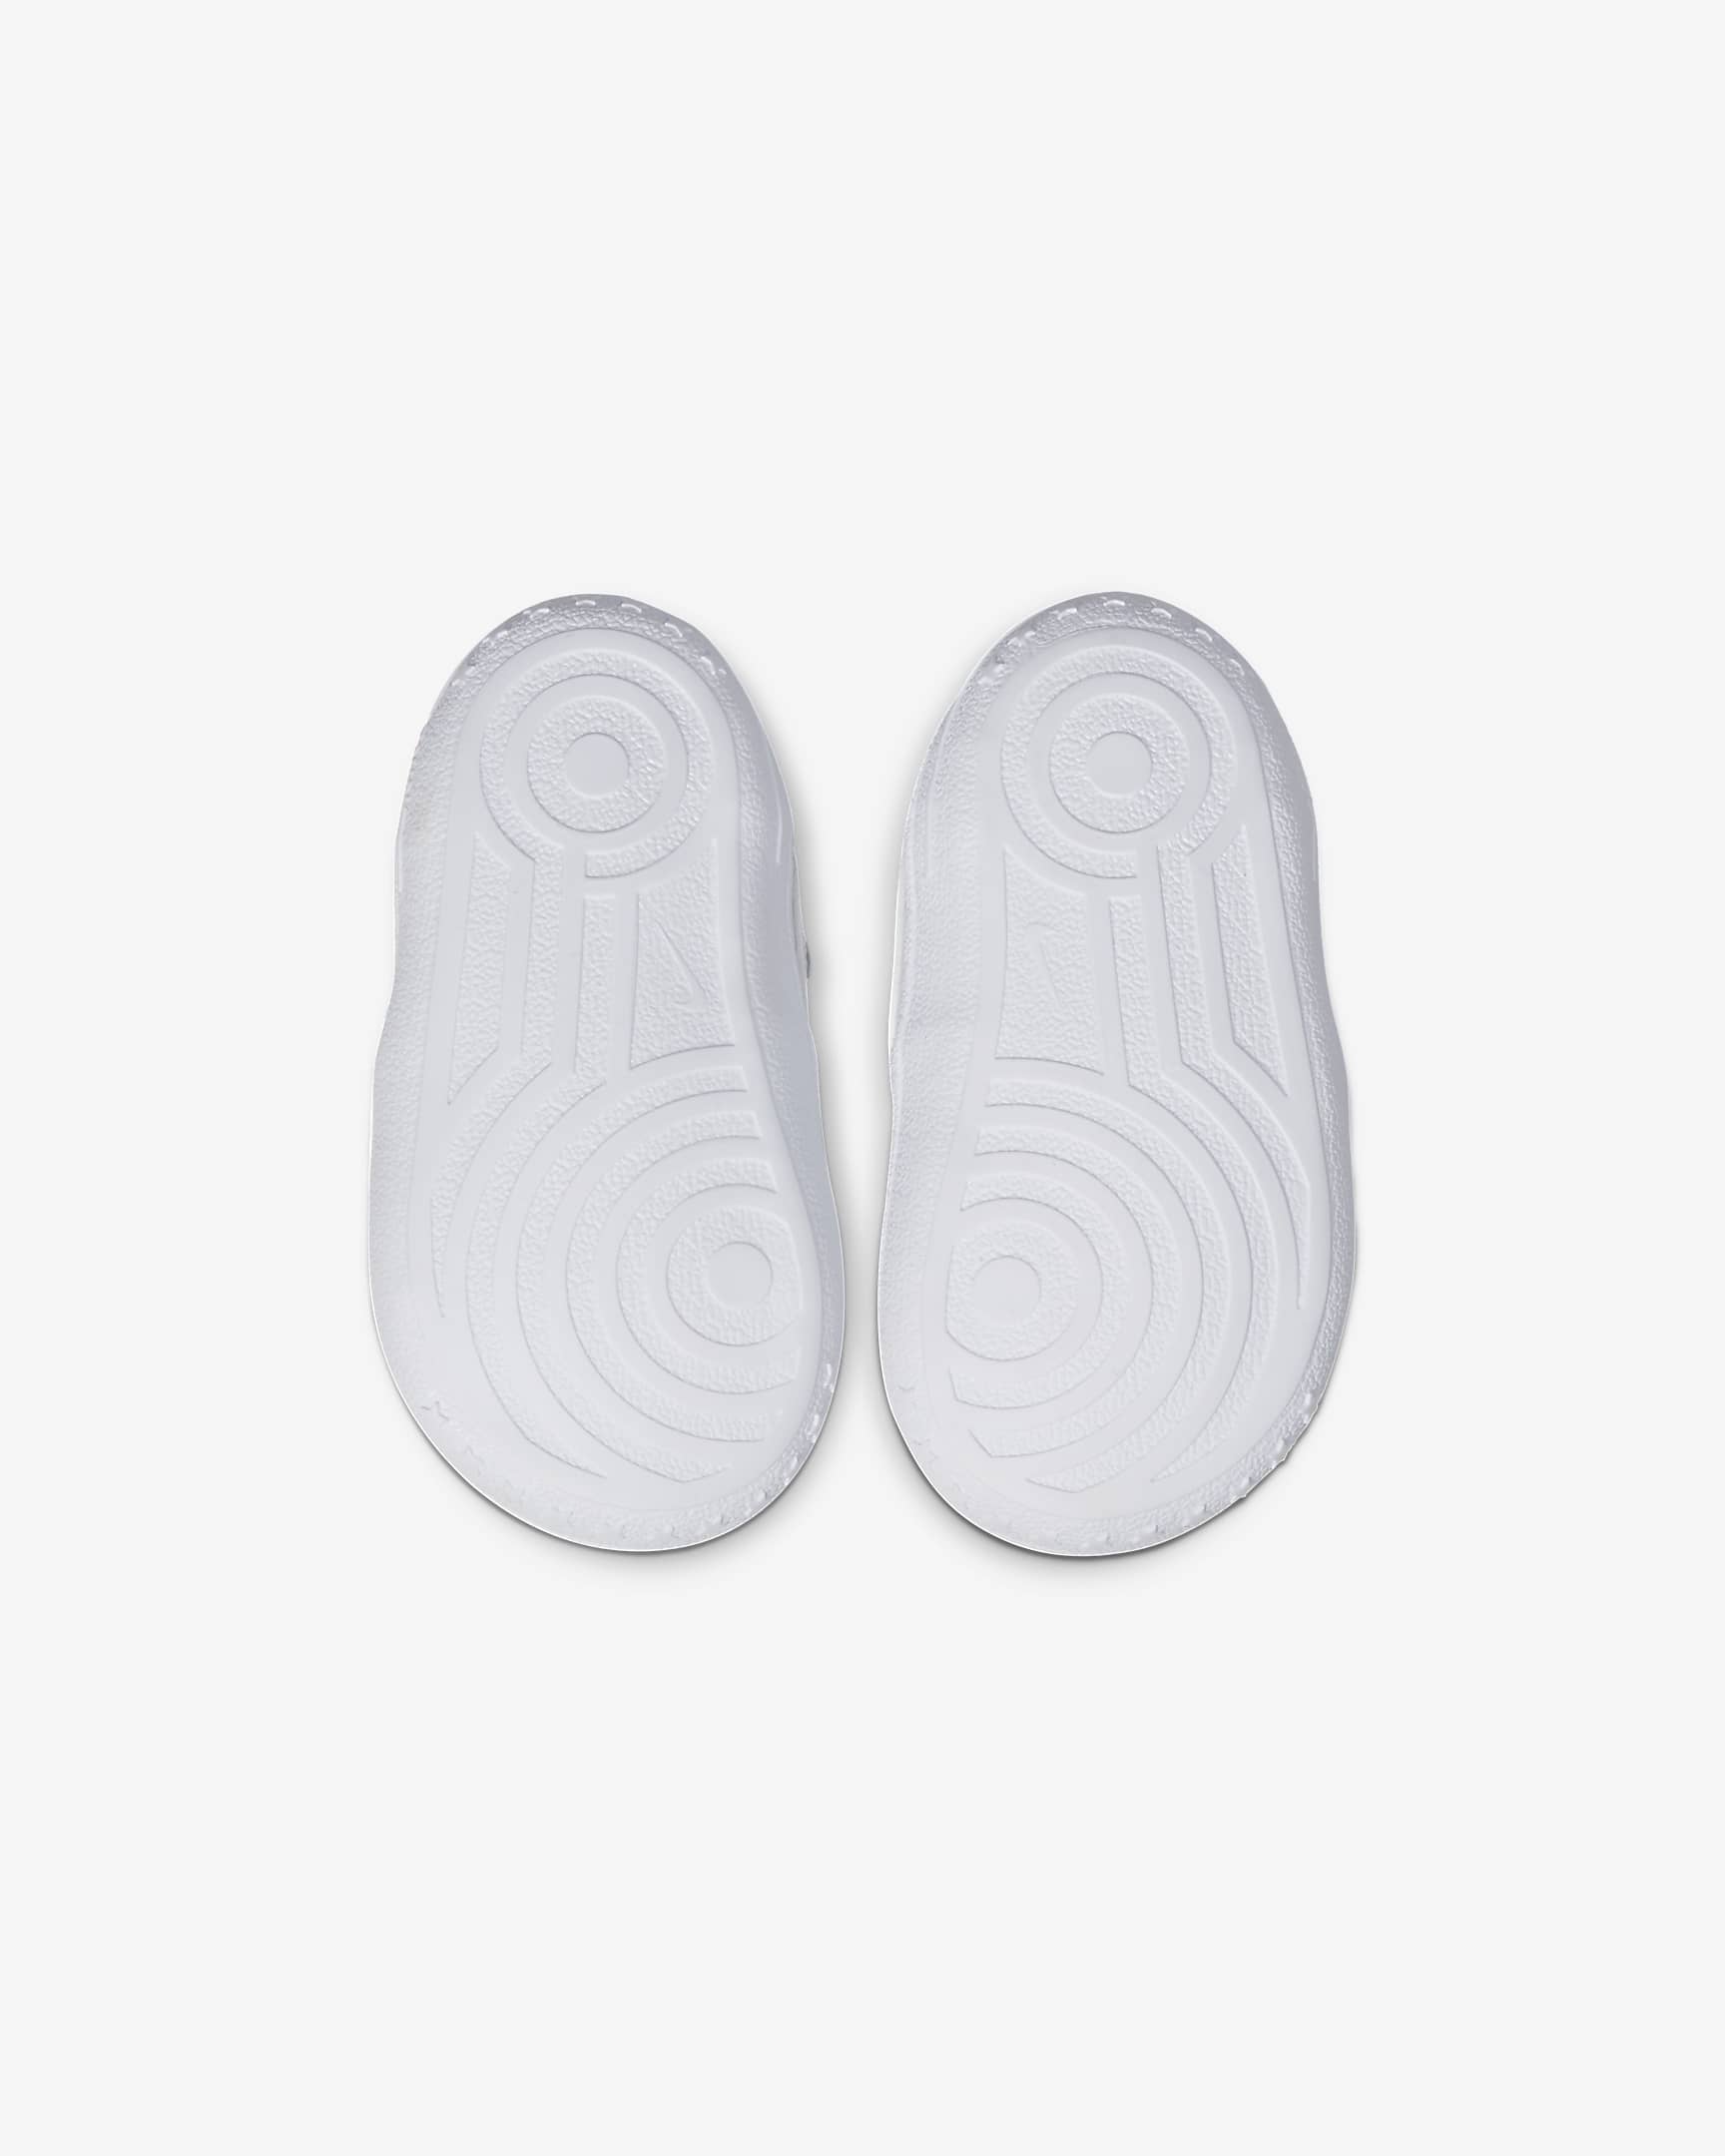 Chausson Nike Force 1 Crib pour bébé - Blanc/Blanc/Blanc